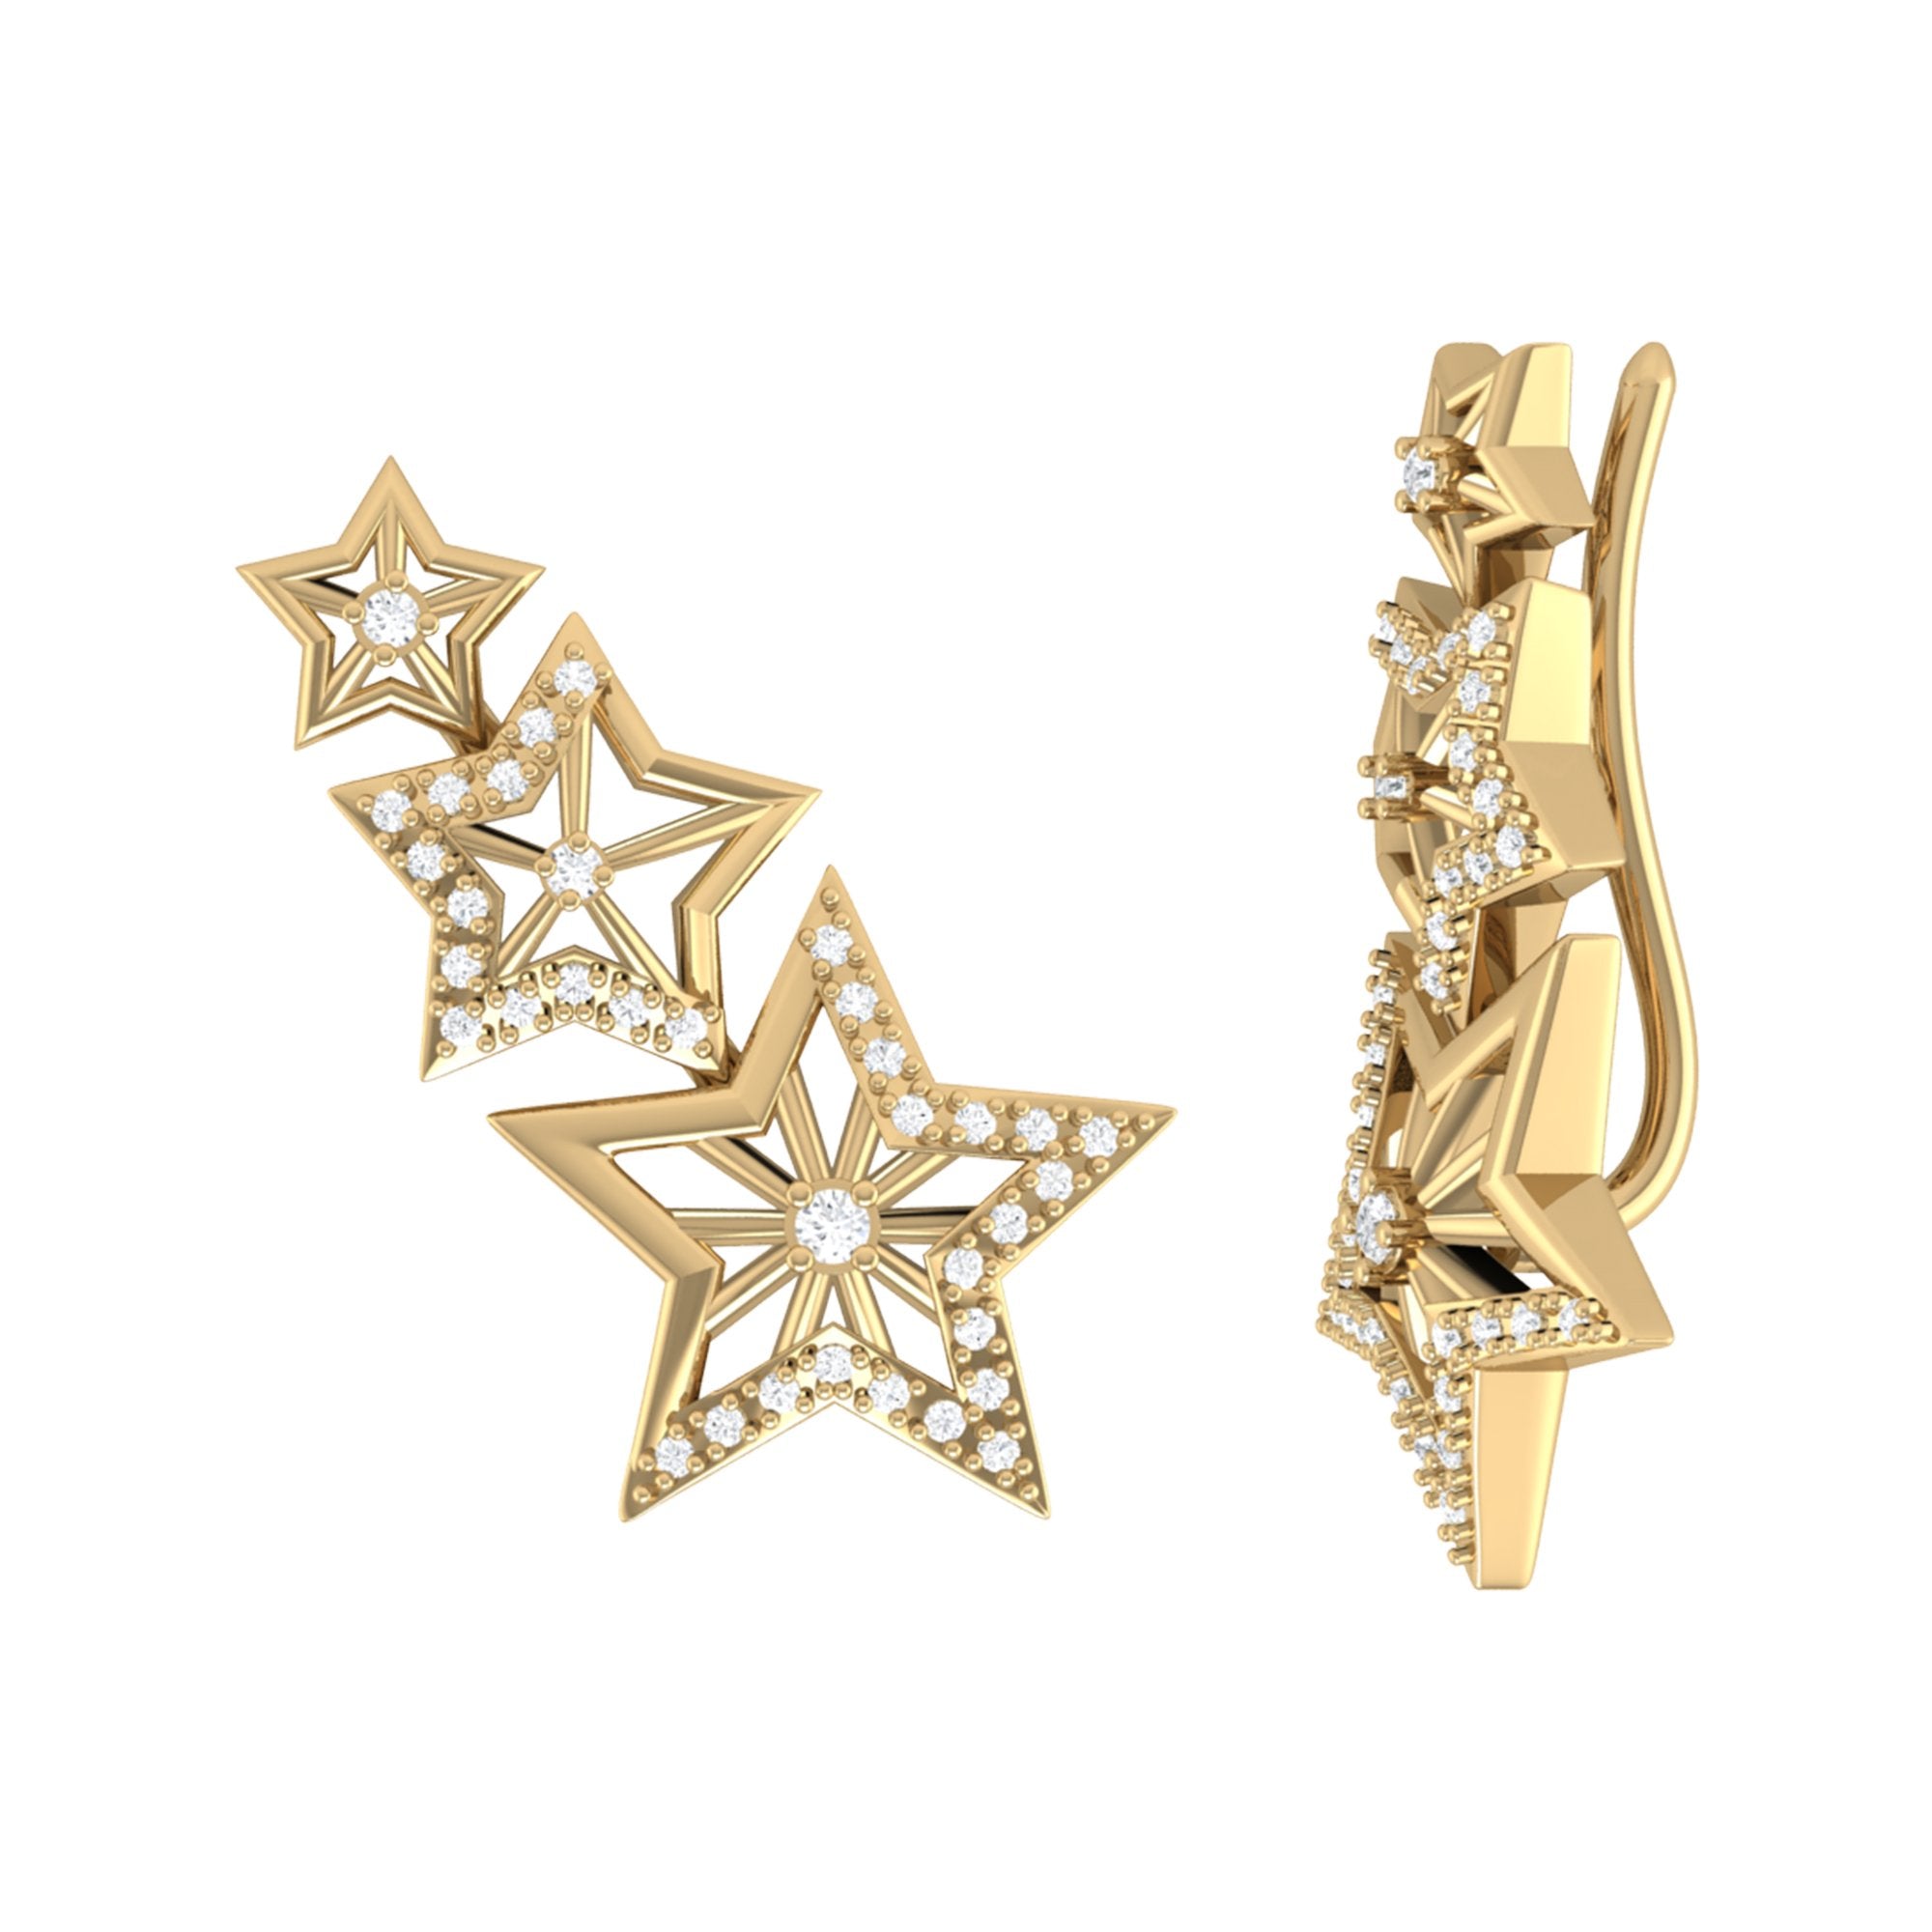 14K Yellow Gold Starburst Diamond Ear Climbers - Natural Diamonds, Handmade Bijou Her